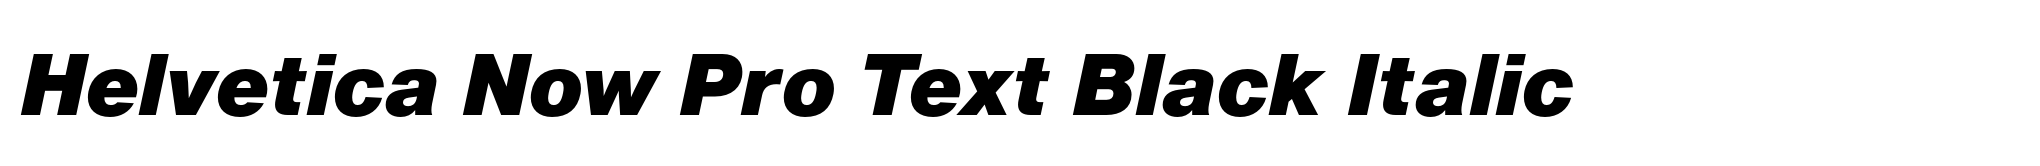 Helvetica Now Pro Text Black Italic image